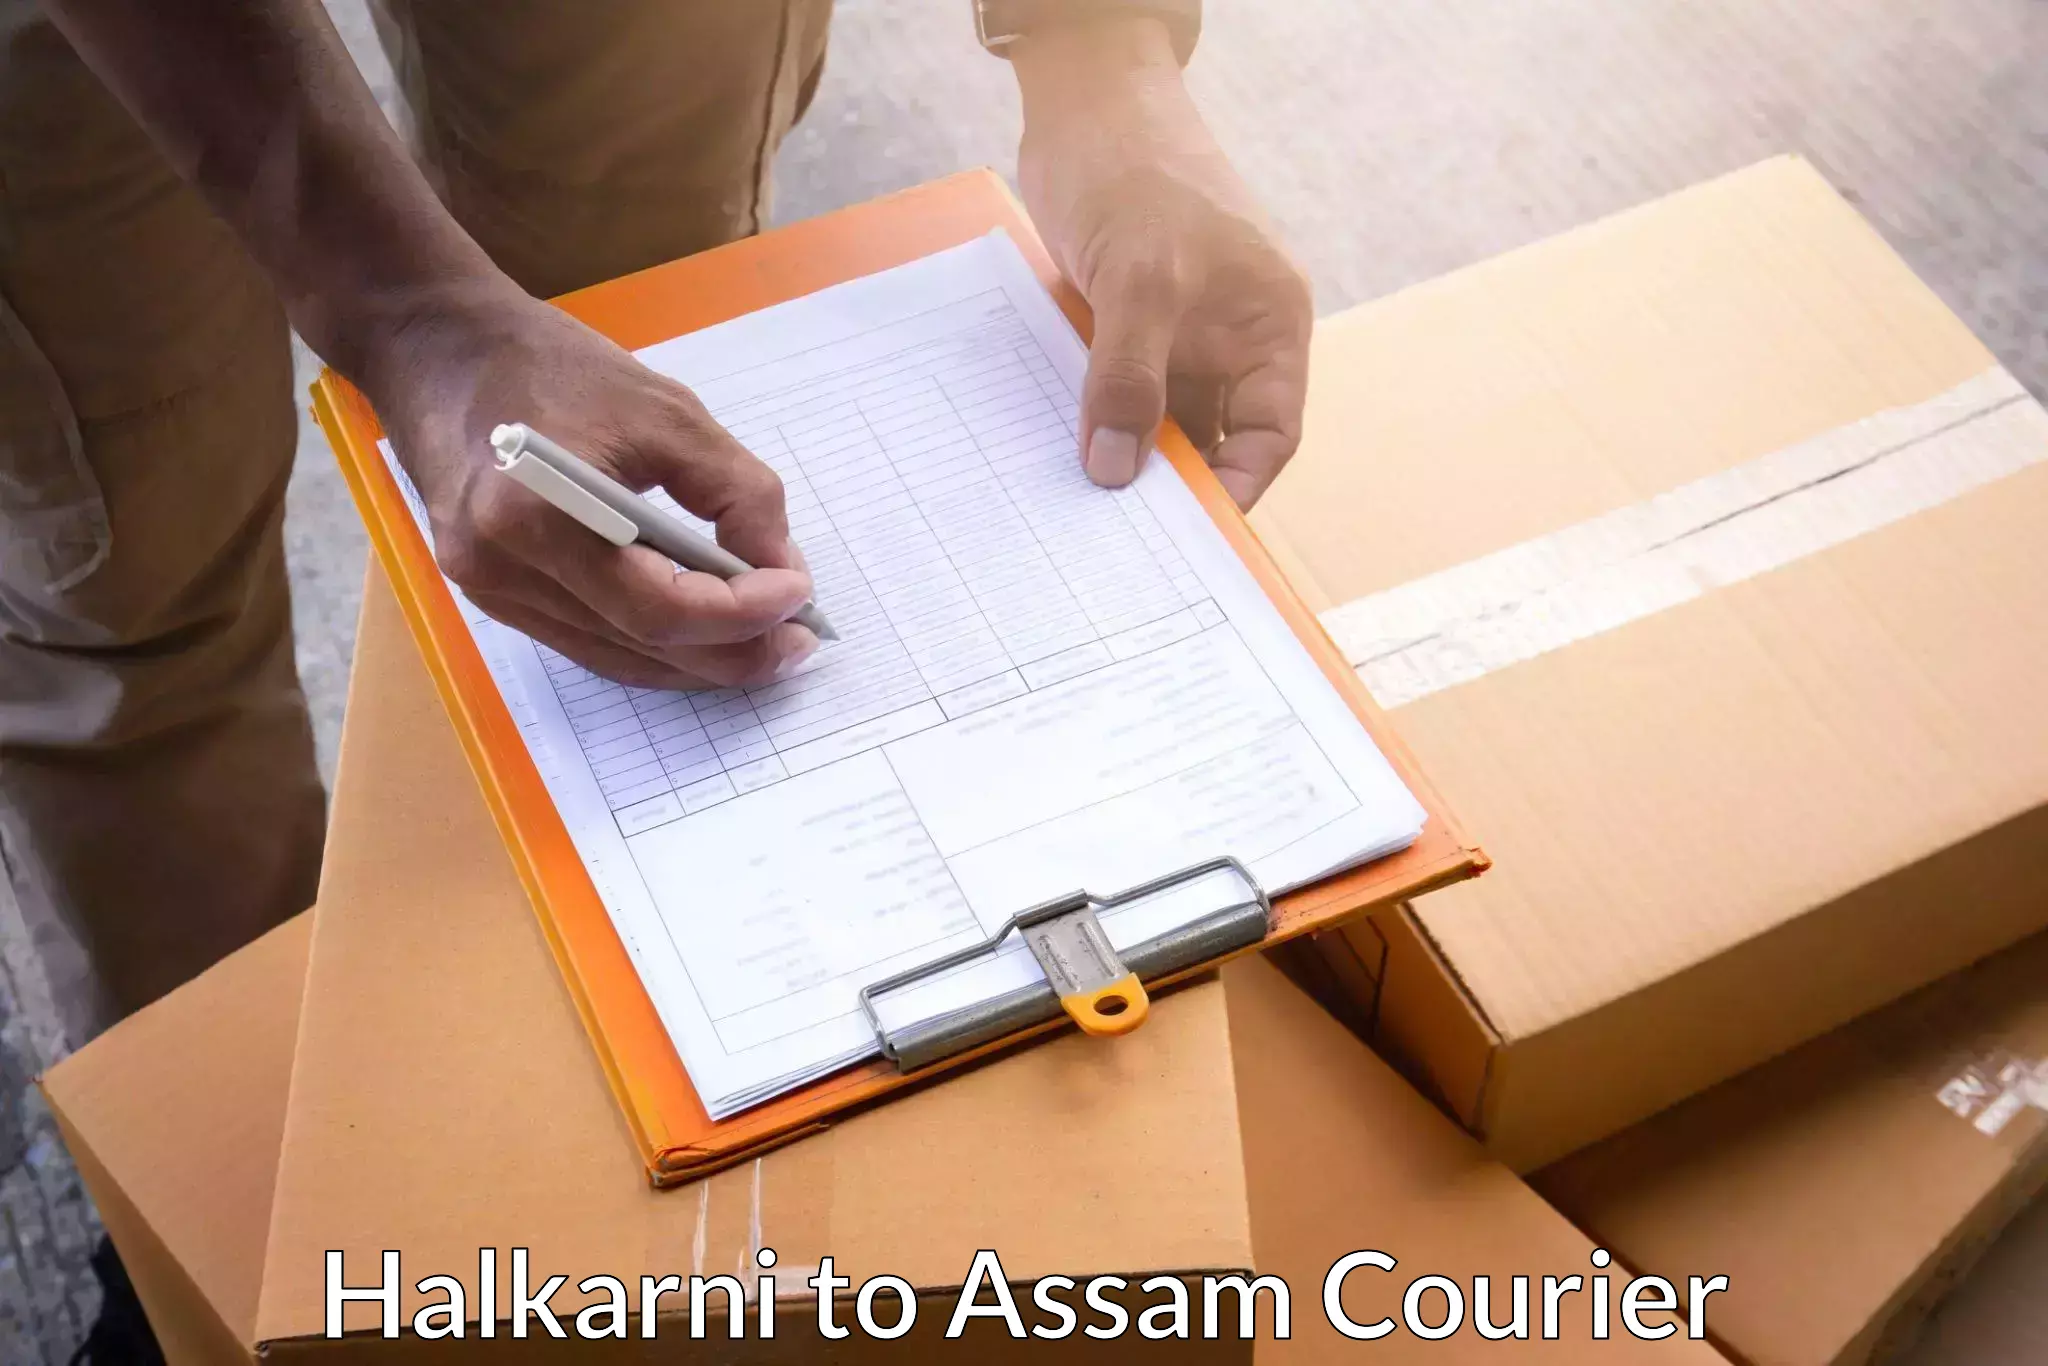 Customer-centric shipping Halkarni to Assam